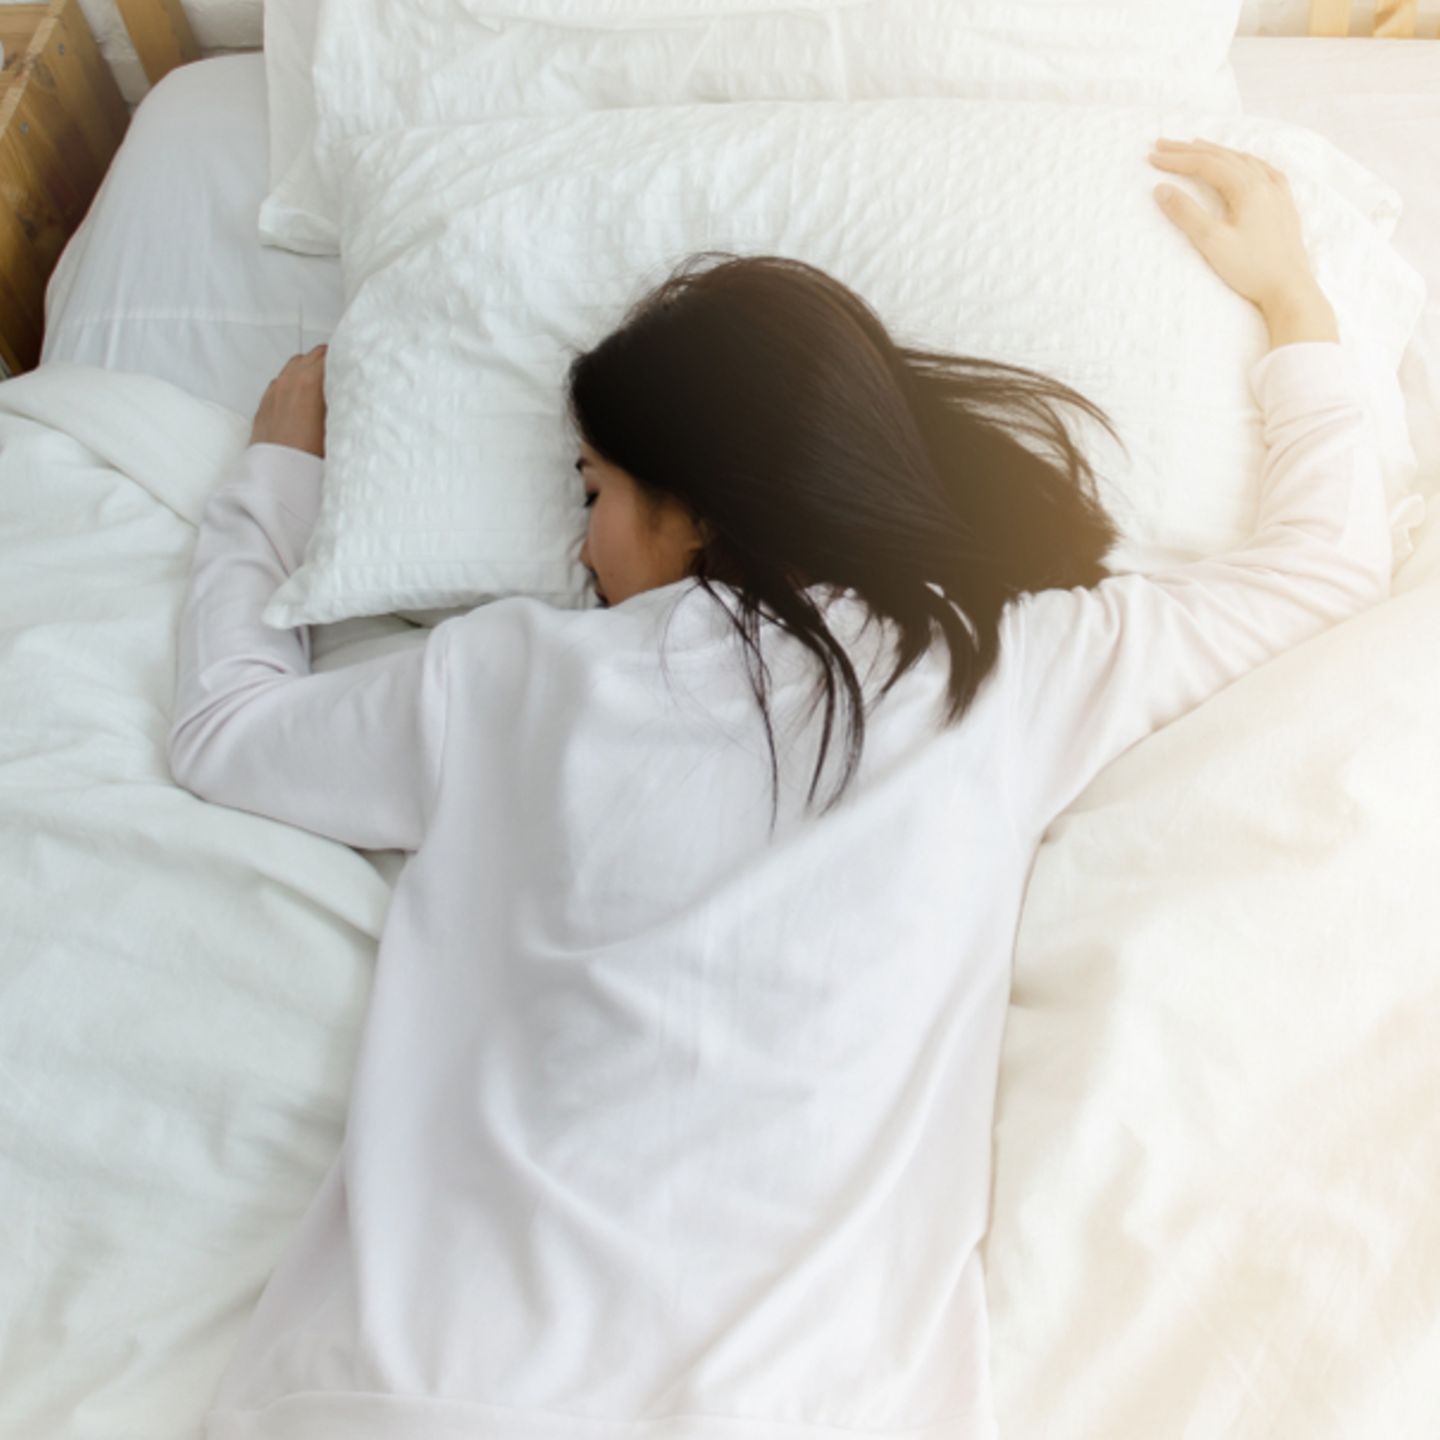 viel Schlaf ist ungesund: Warum wir nicht mehr als 9 Stunden schlafen sollten | BRIGITTE.de